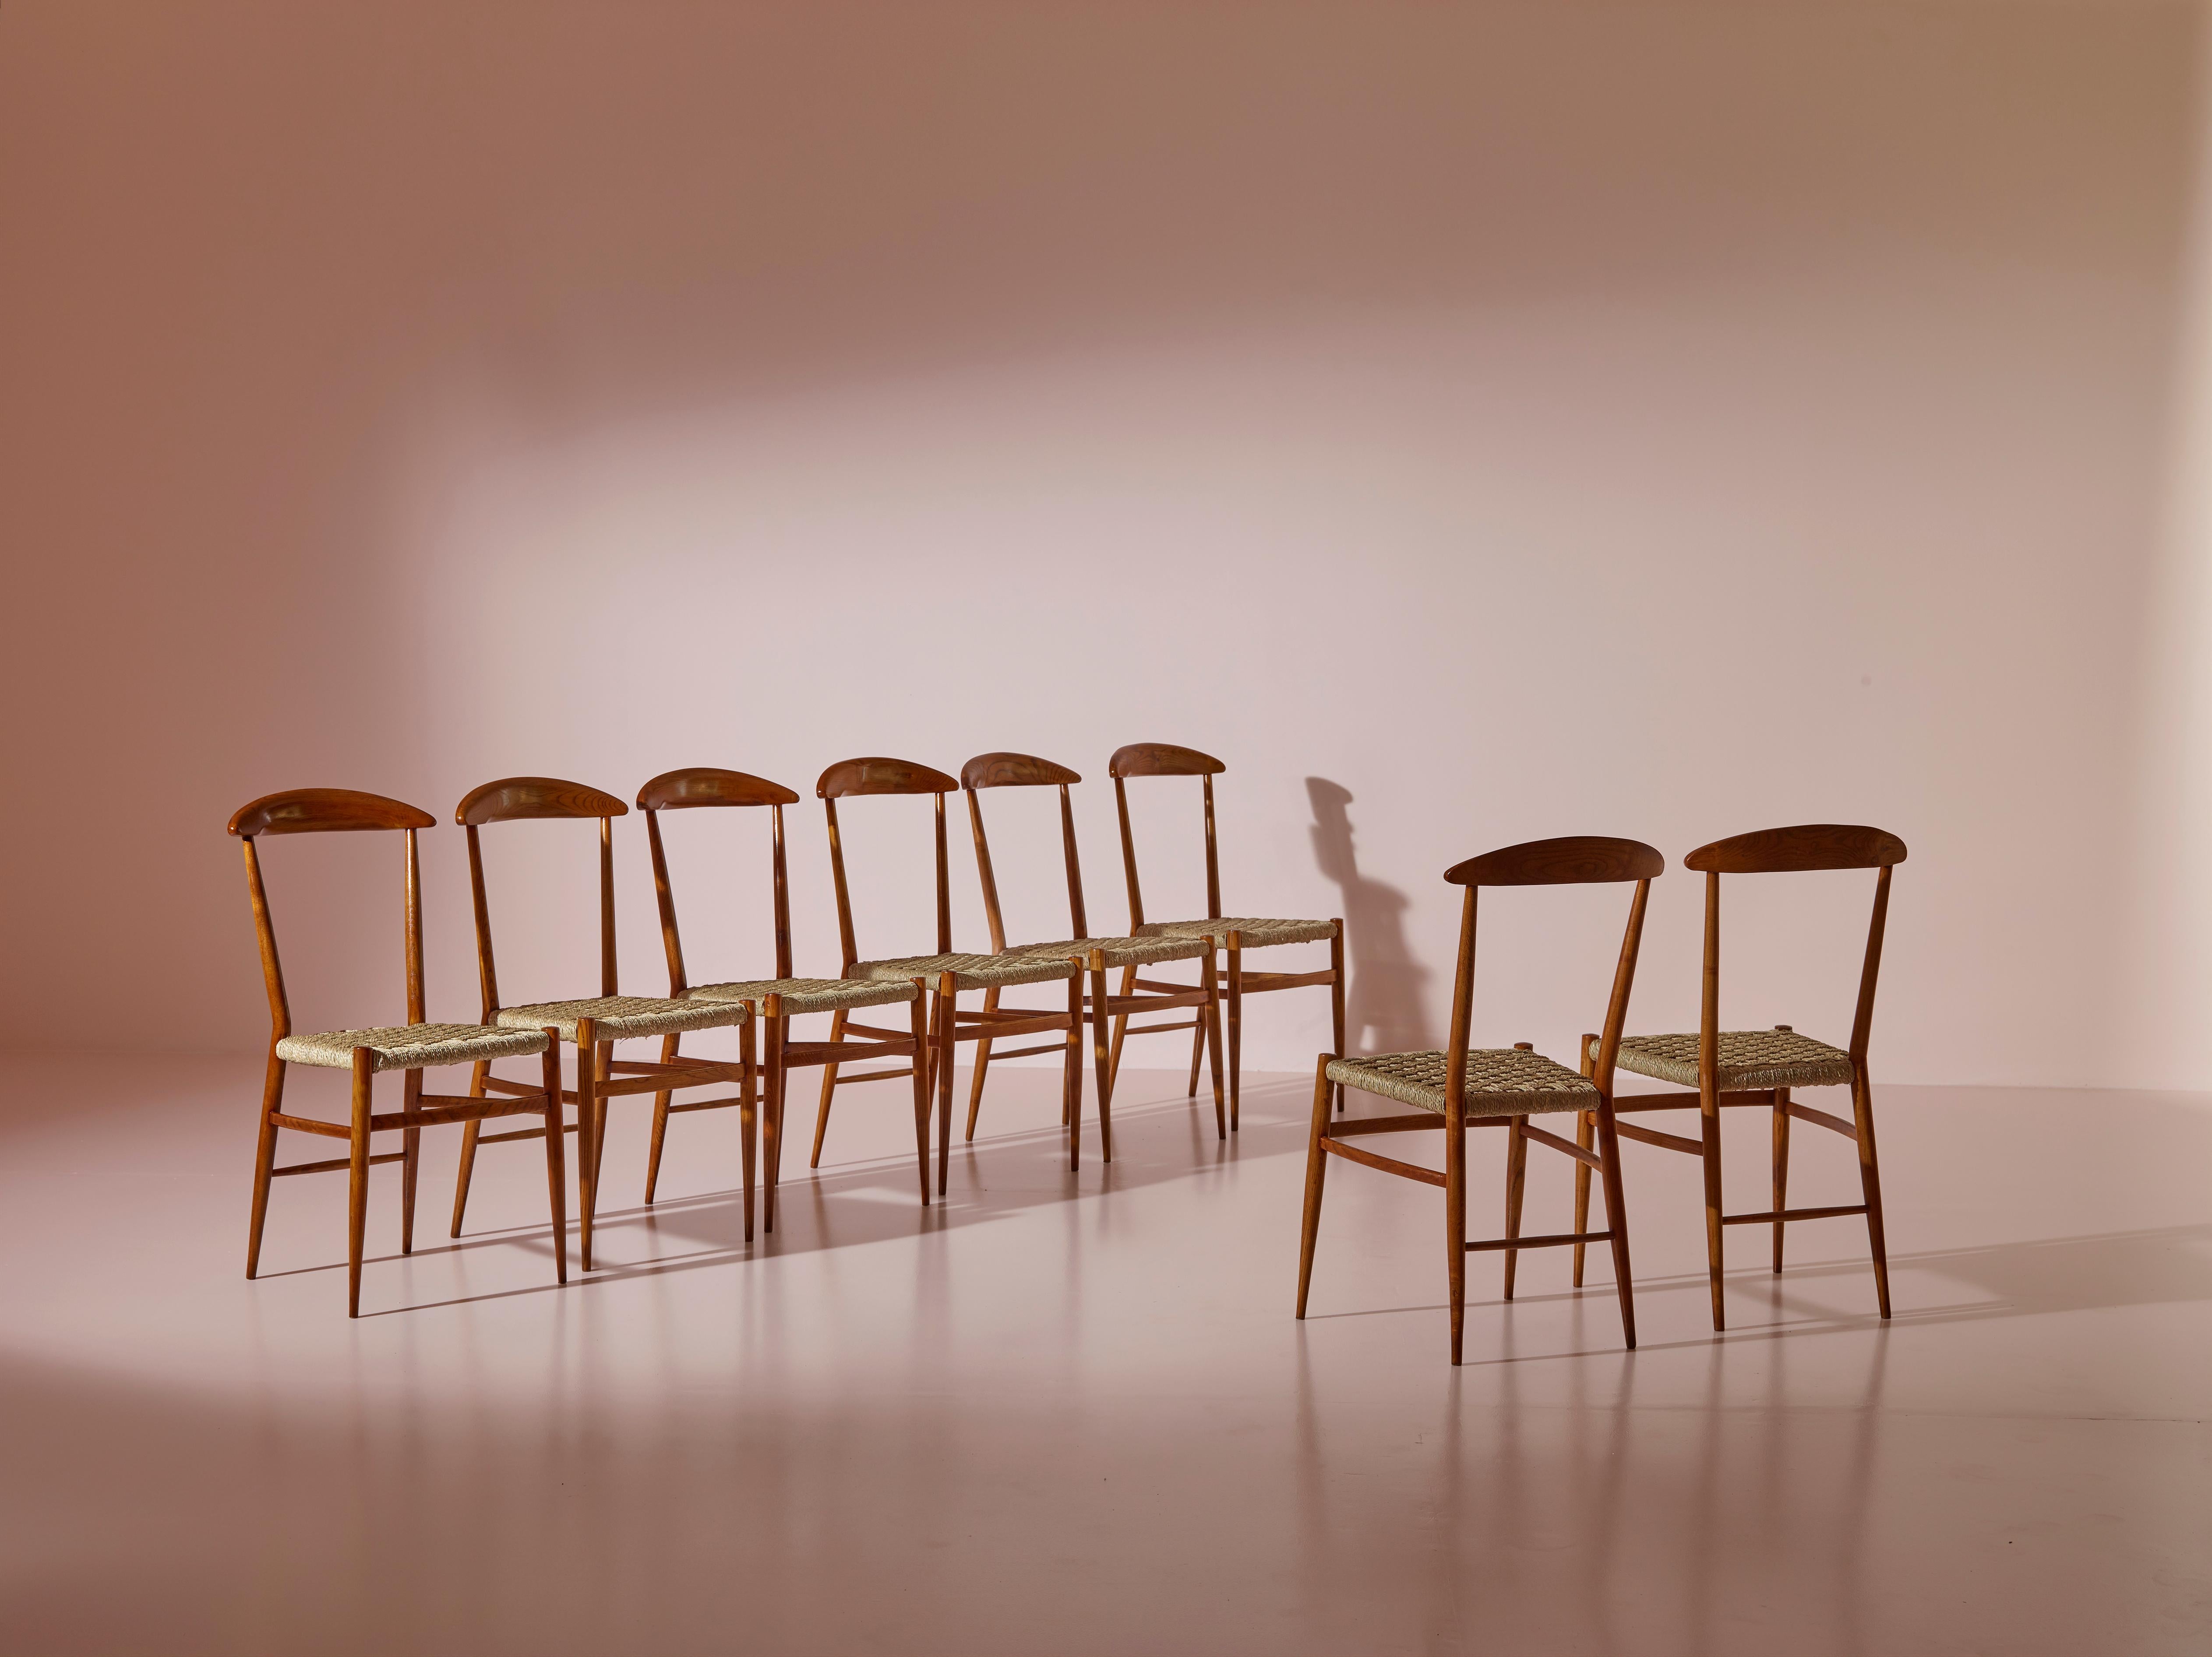 Un rare ensemble de huit chaises de salle à manger a été produit à Chiavari dans les années 1950 par le célèbre ébéniste Guido Chiappe. Ces chaises 